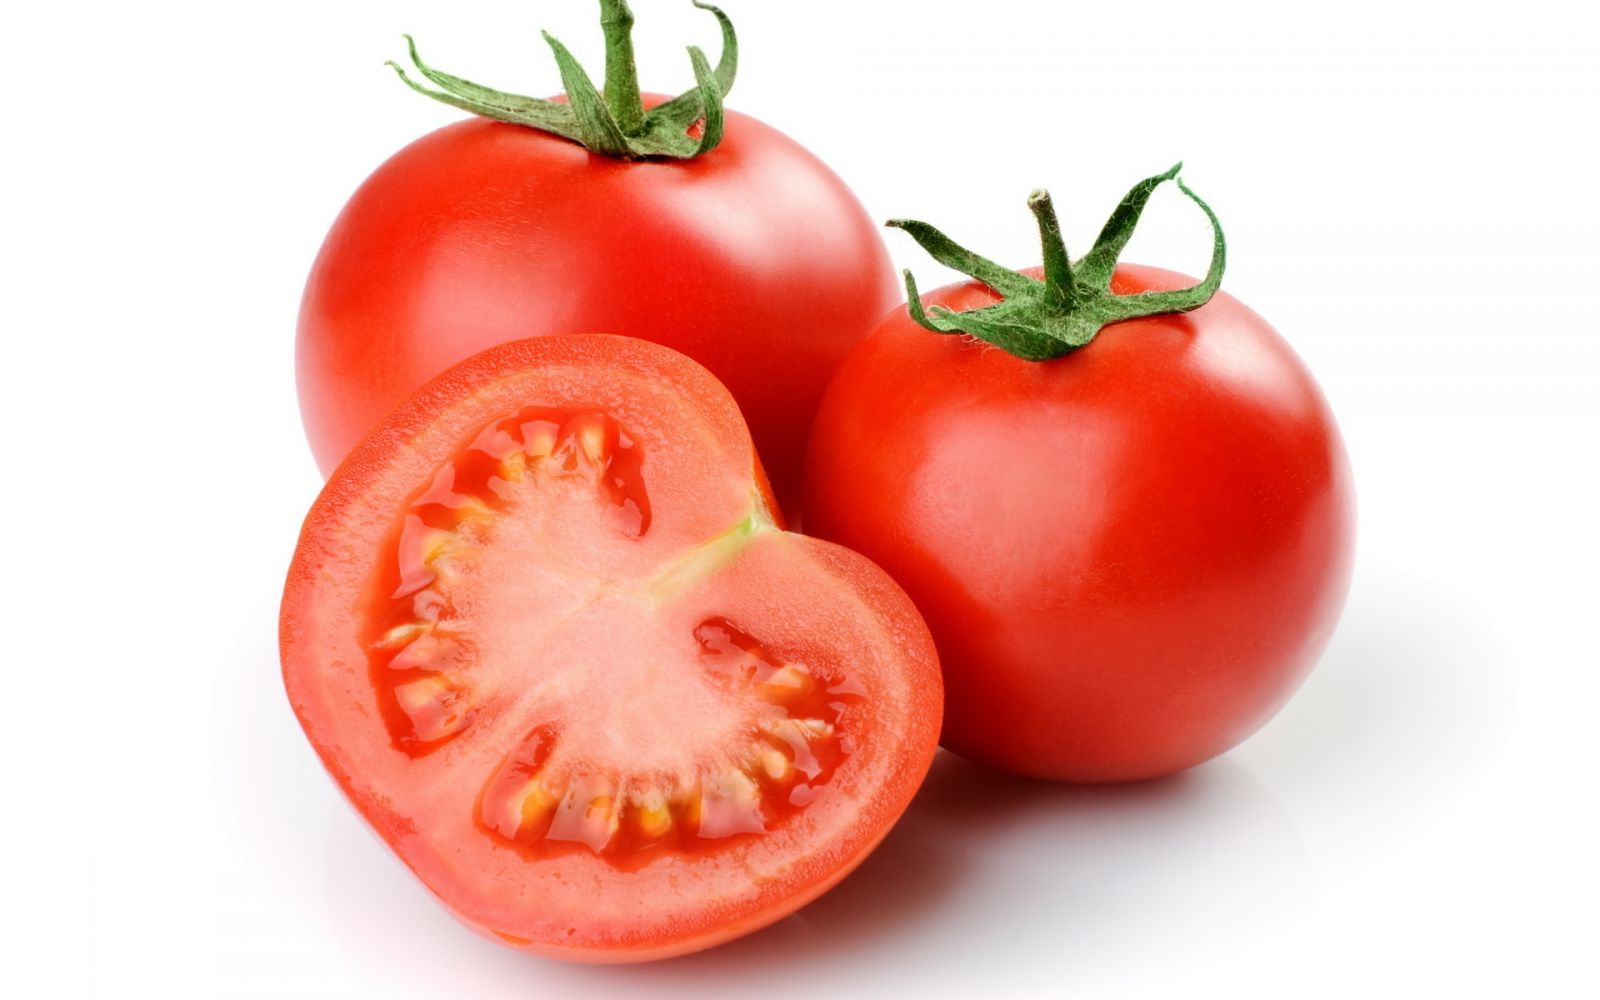 Cà chua
Cà chua là một loại quả có tác dụng rất tốt cho sức khỏe và vẻ đẹp của cơ thể. Trong cà chua có đủ hầu hết các loại dưỡng chất mà cơ thể cần. Nó có tác dụng chống lão hóa, giảm mệt mỏi, giúp trẻ hóa làn da, giảm căng thẳng, mệt mỏi.